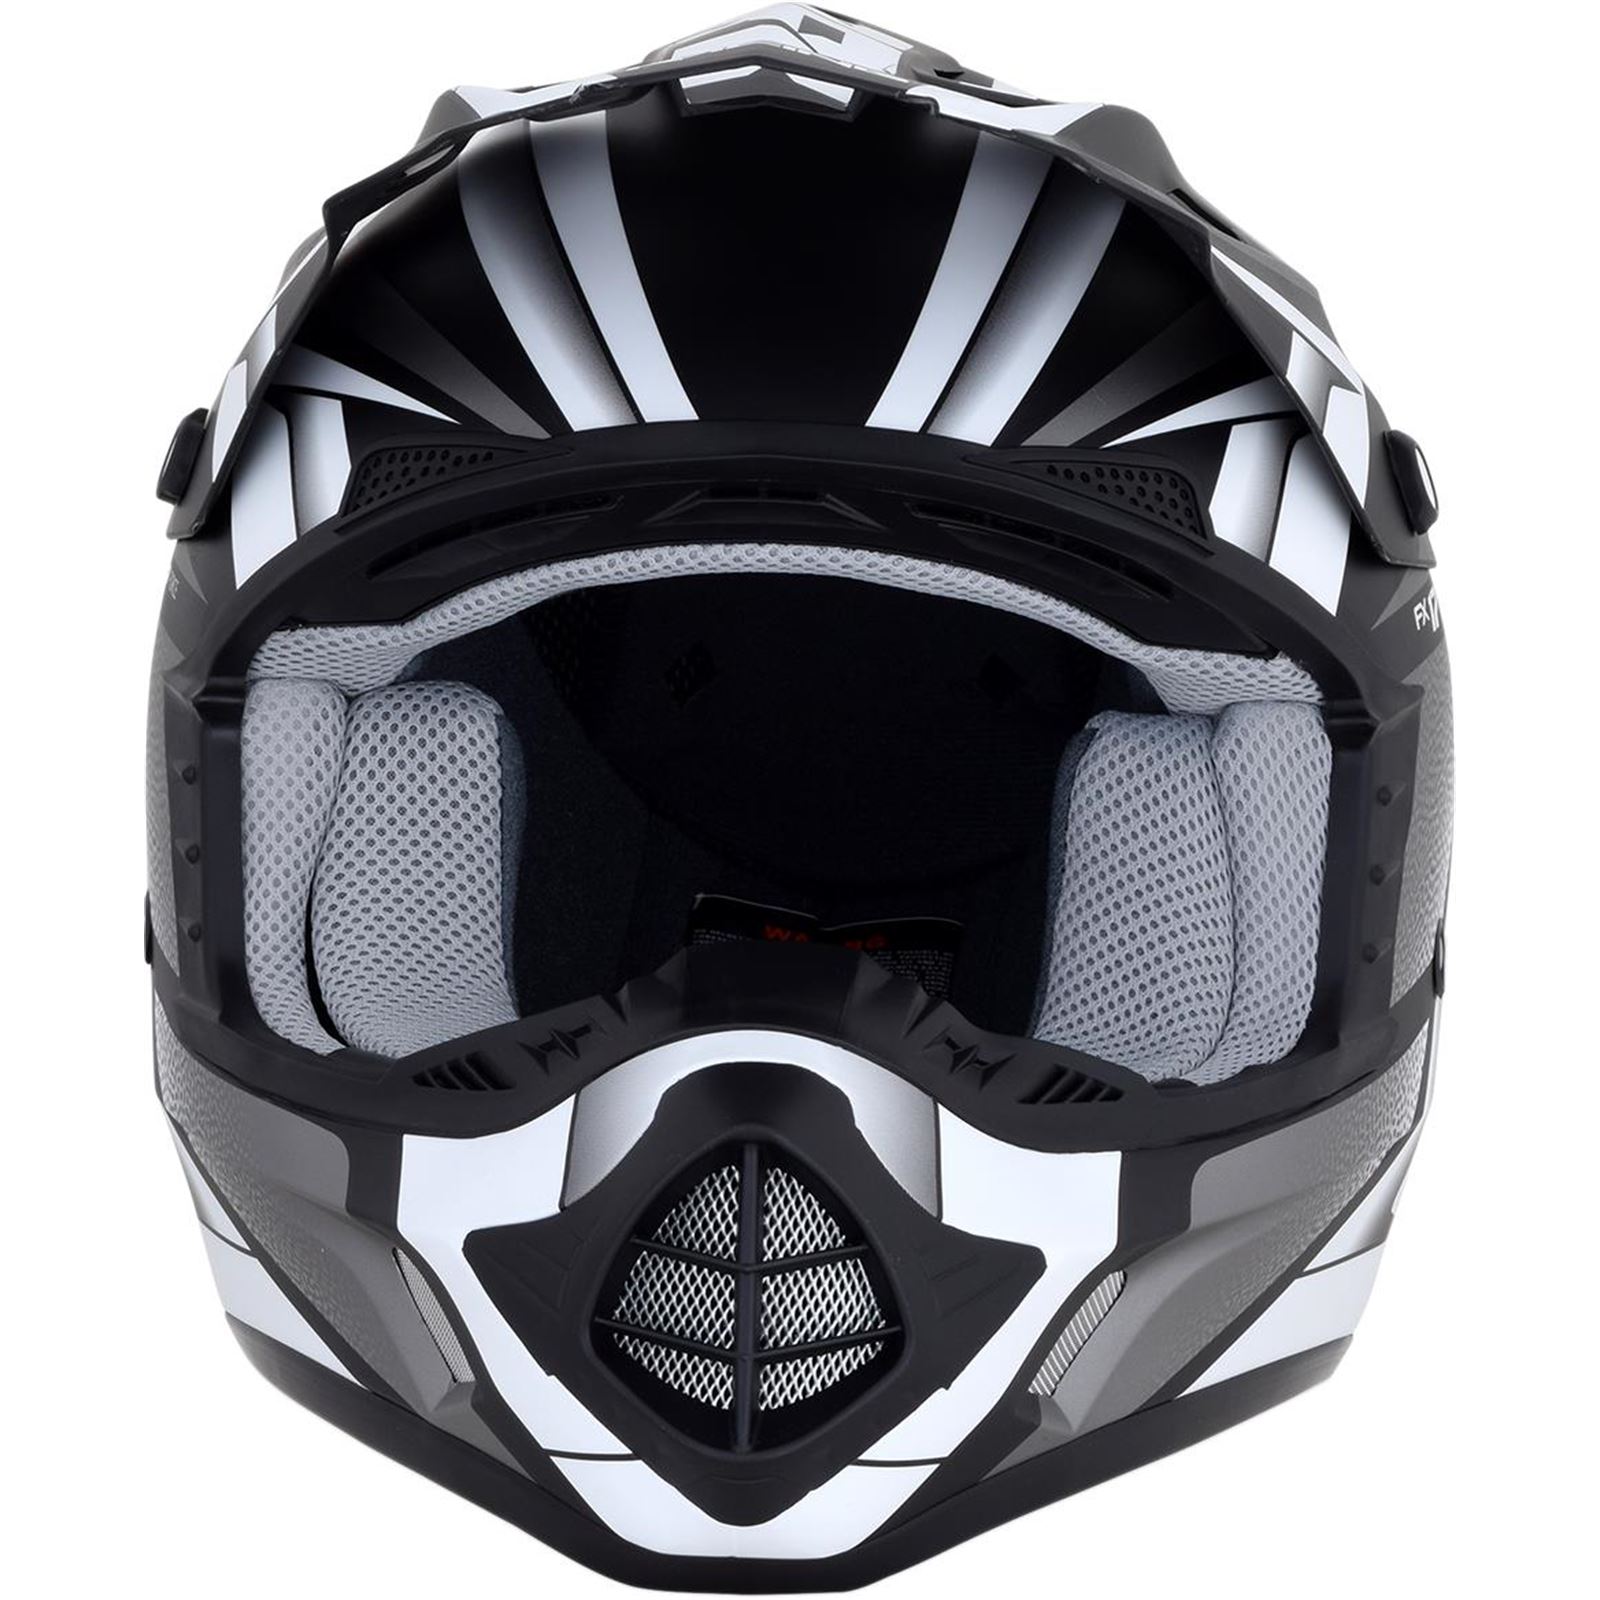 AFX FX-17 Helmet - Force - Matte Black/White - X-Large